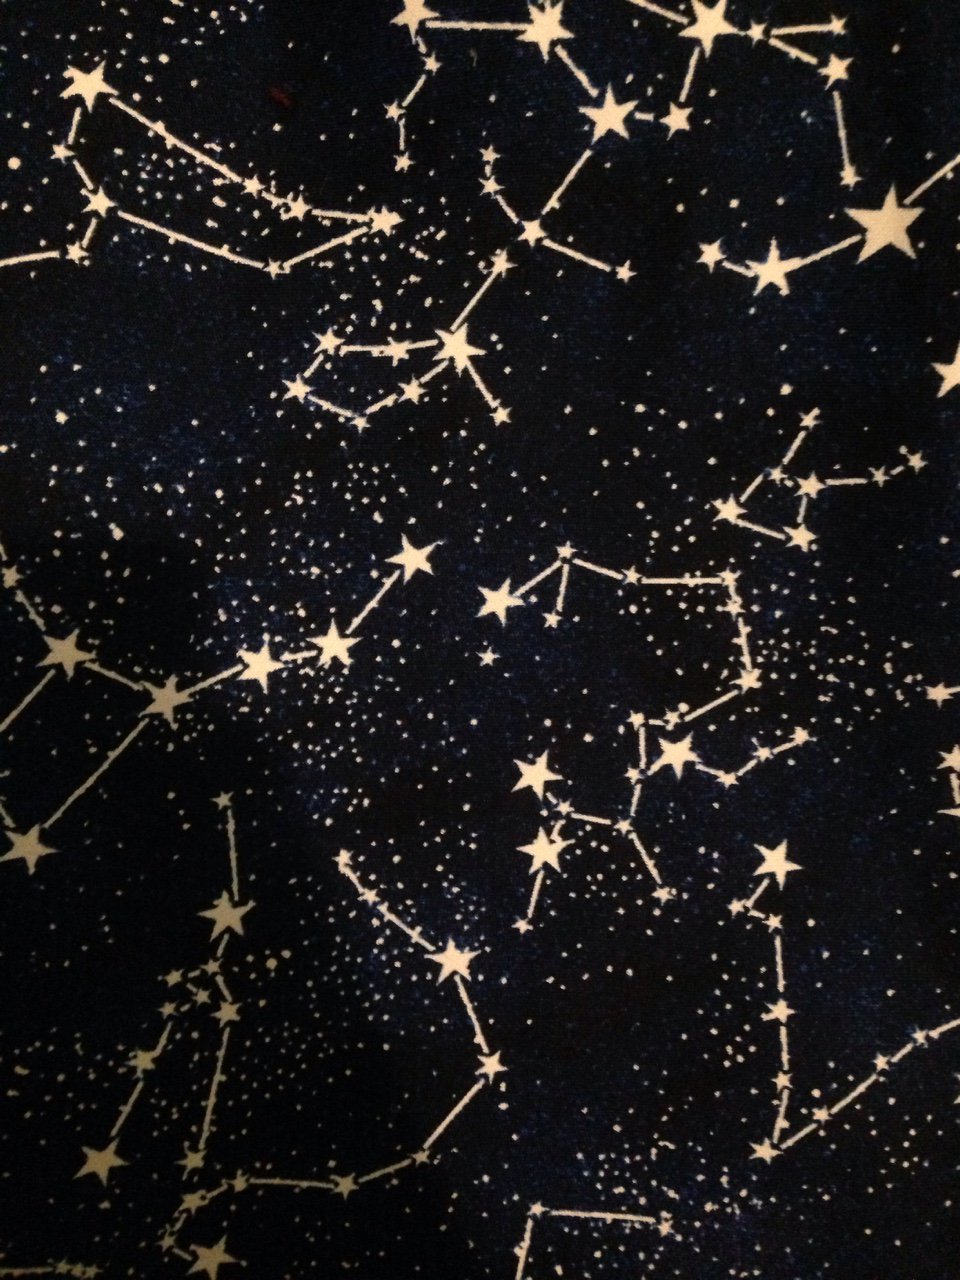 Ночное небо с созвездиями